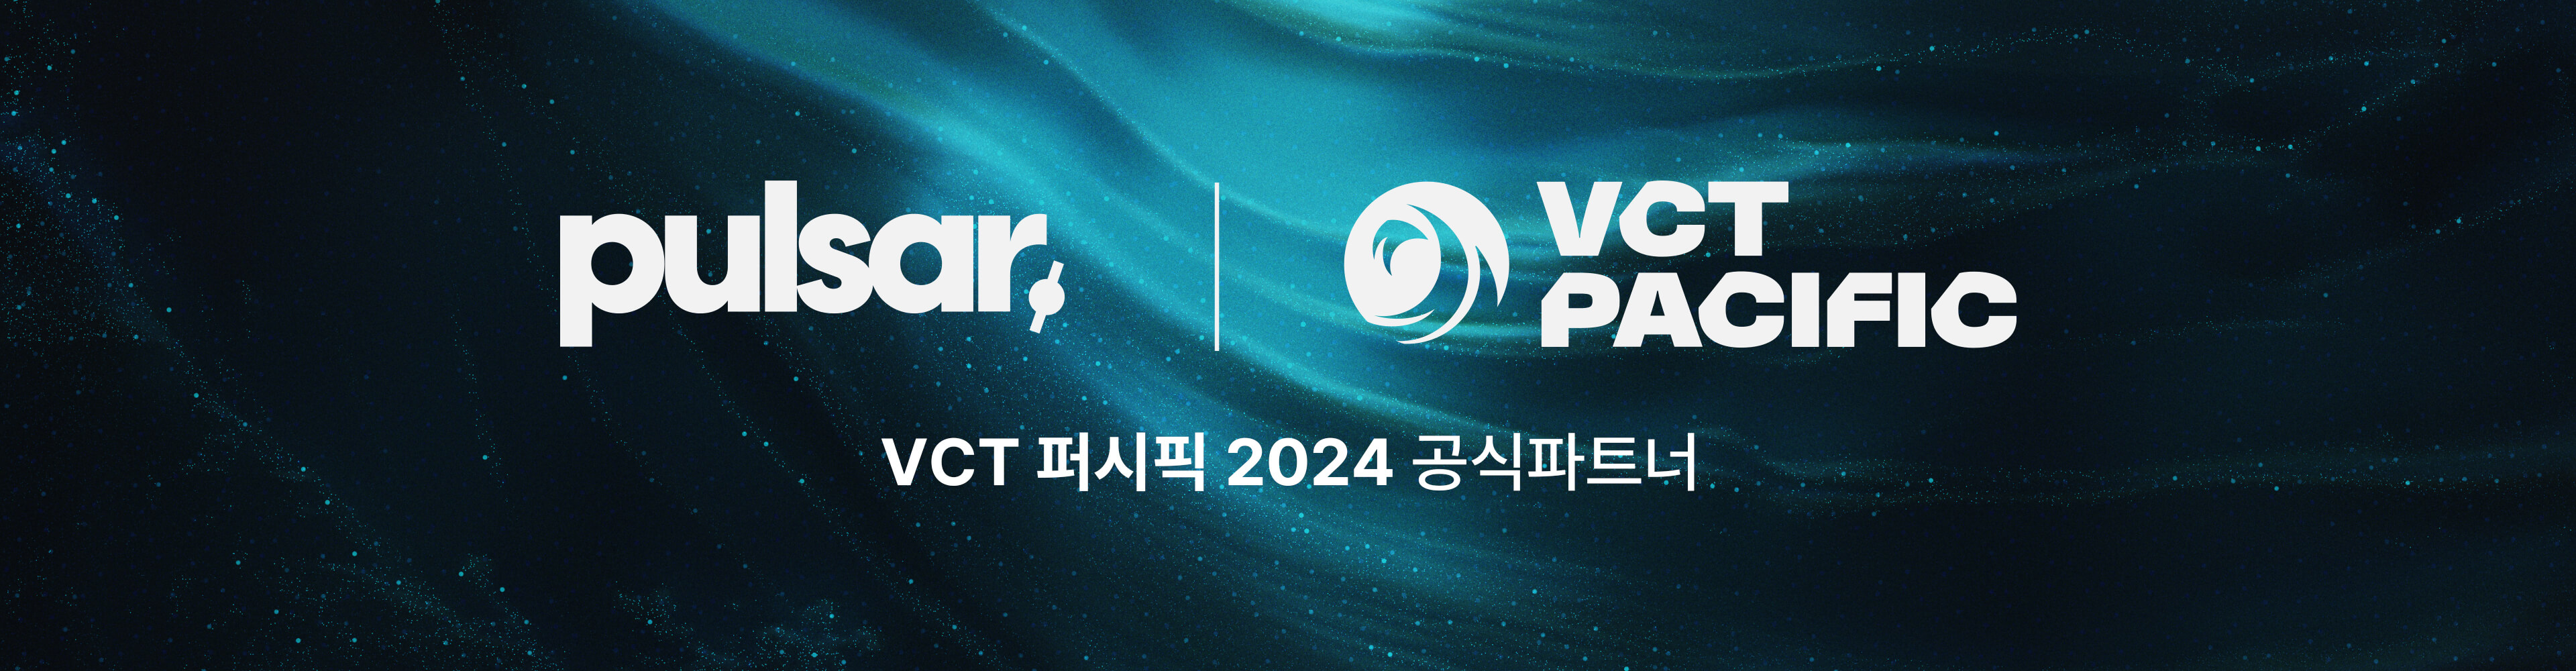 펄사 x VCT퍼시픽 2024 공식파트너